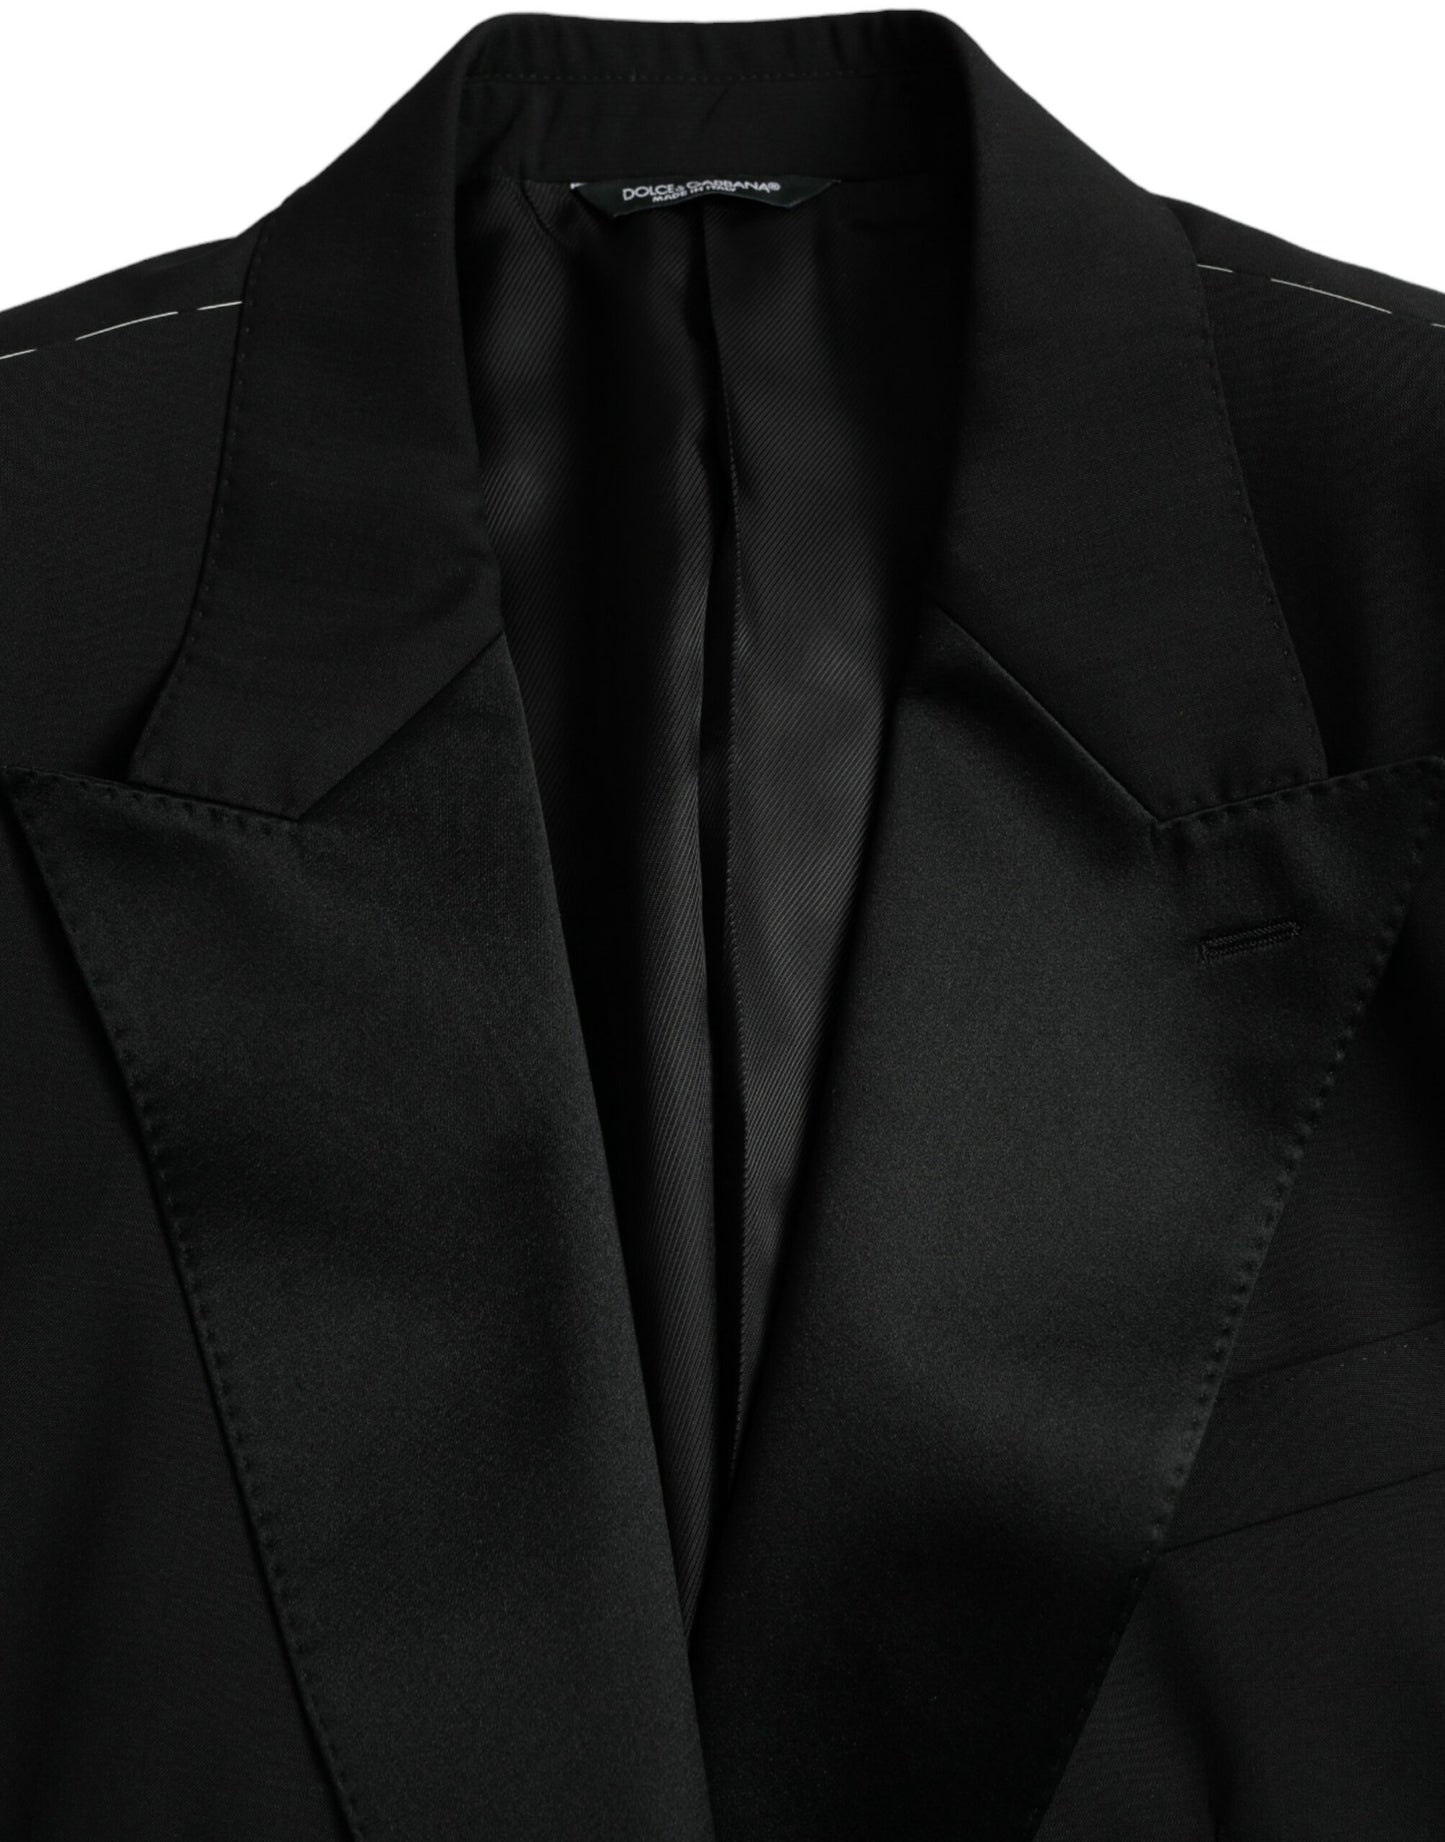 Black SICILIA Single Breasted Coat Blazer